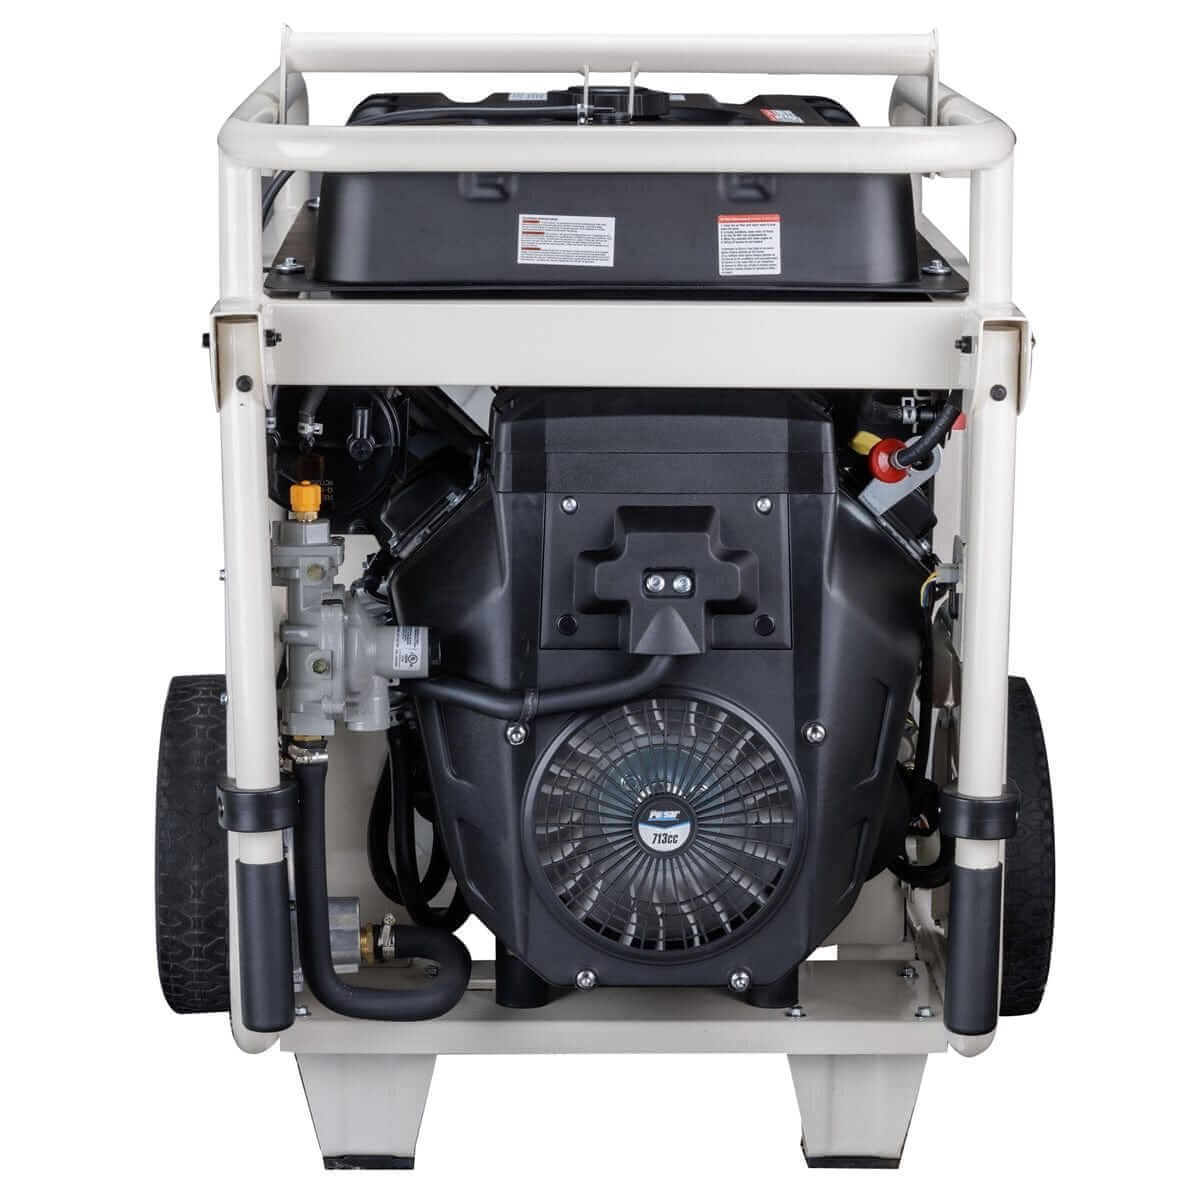 Pulsar generators Pulsar PG15KVTWBCO 15,000-Watt Dual-Fuel Portable Generator with Electric Start – CARB Compliant